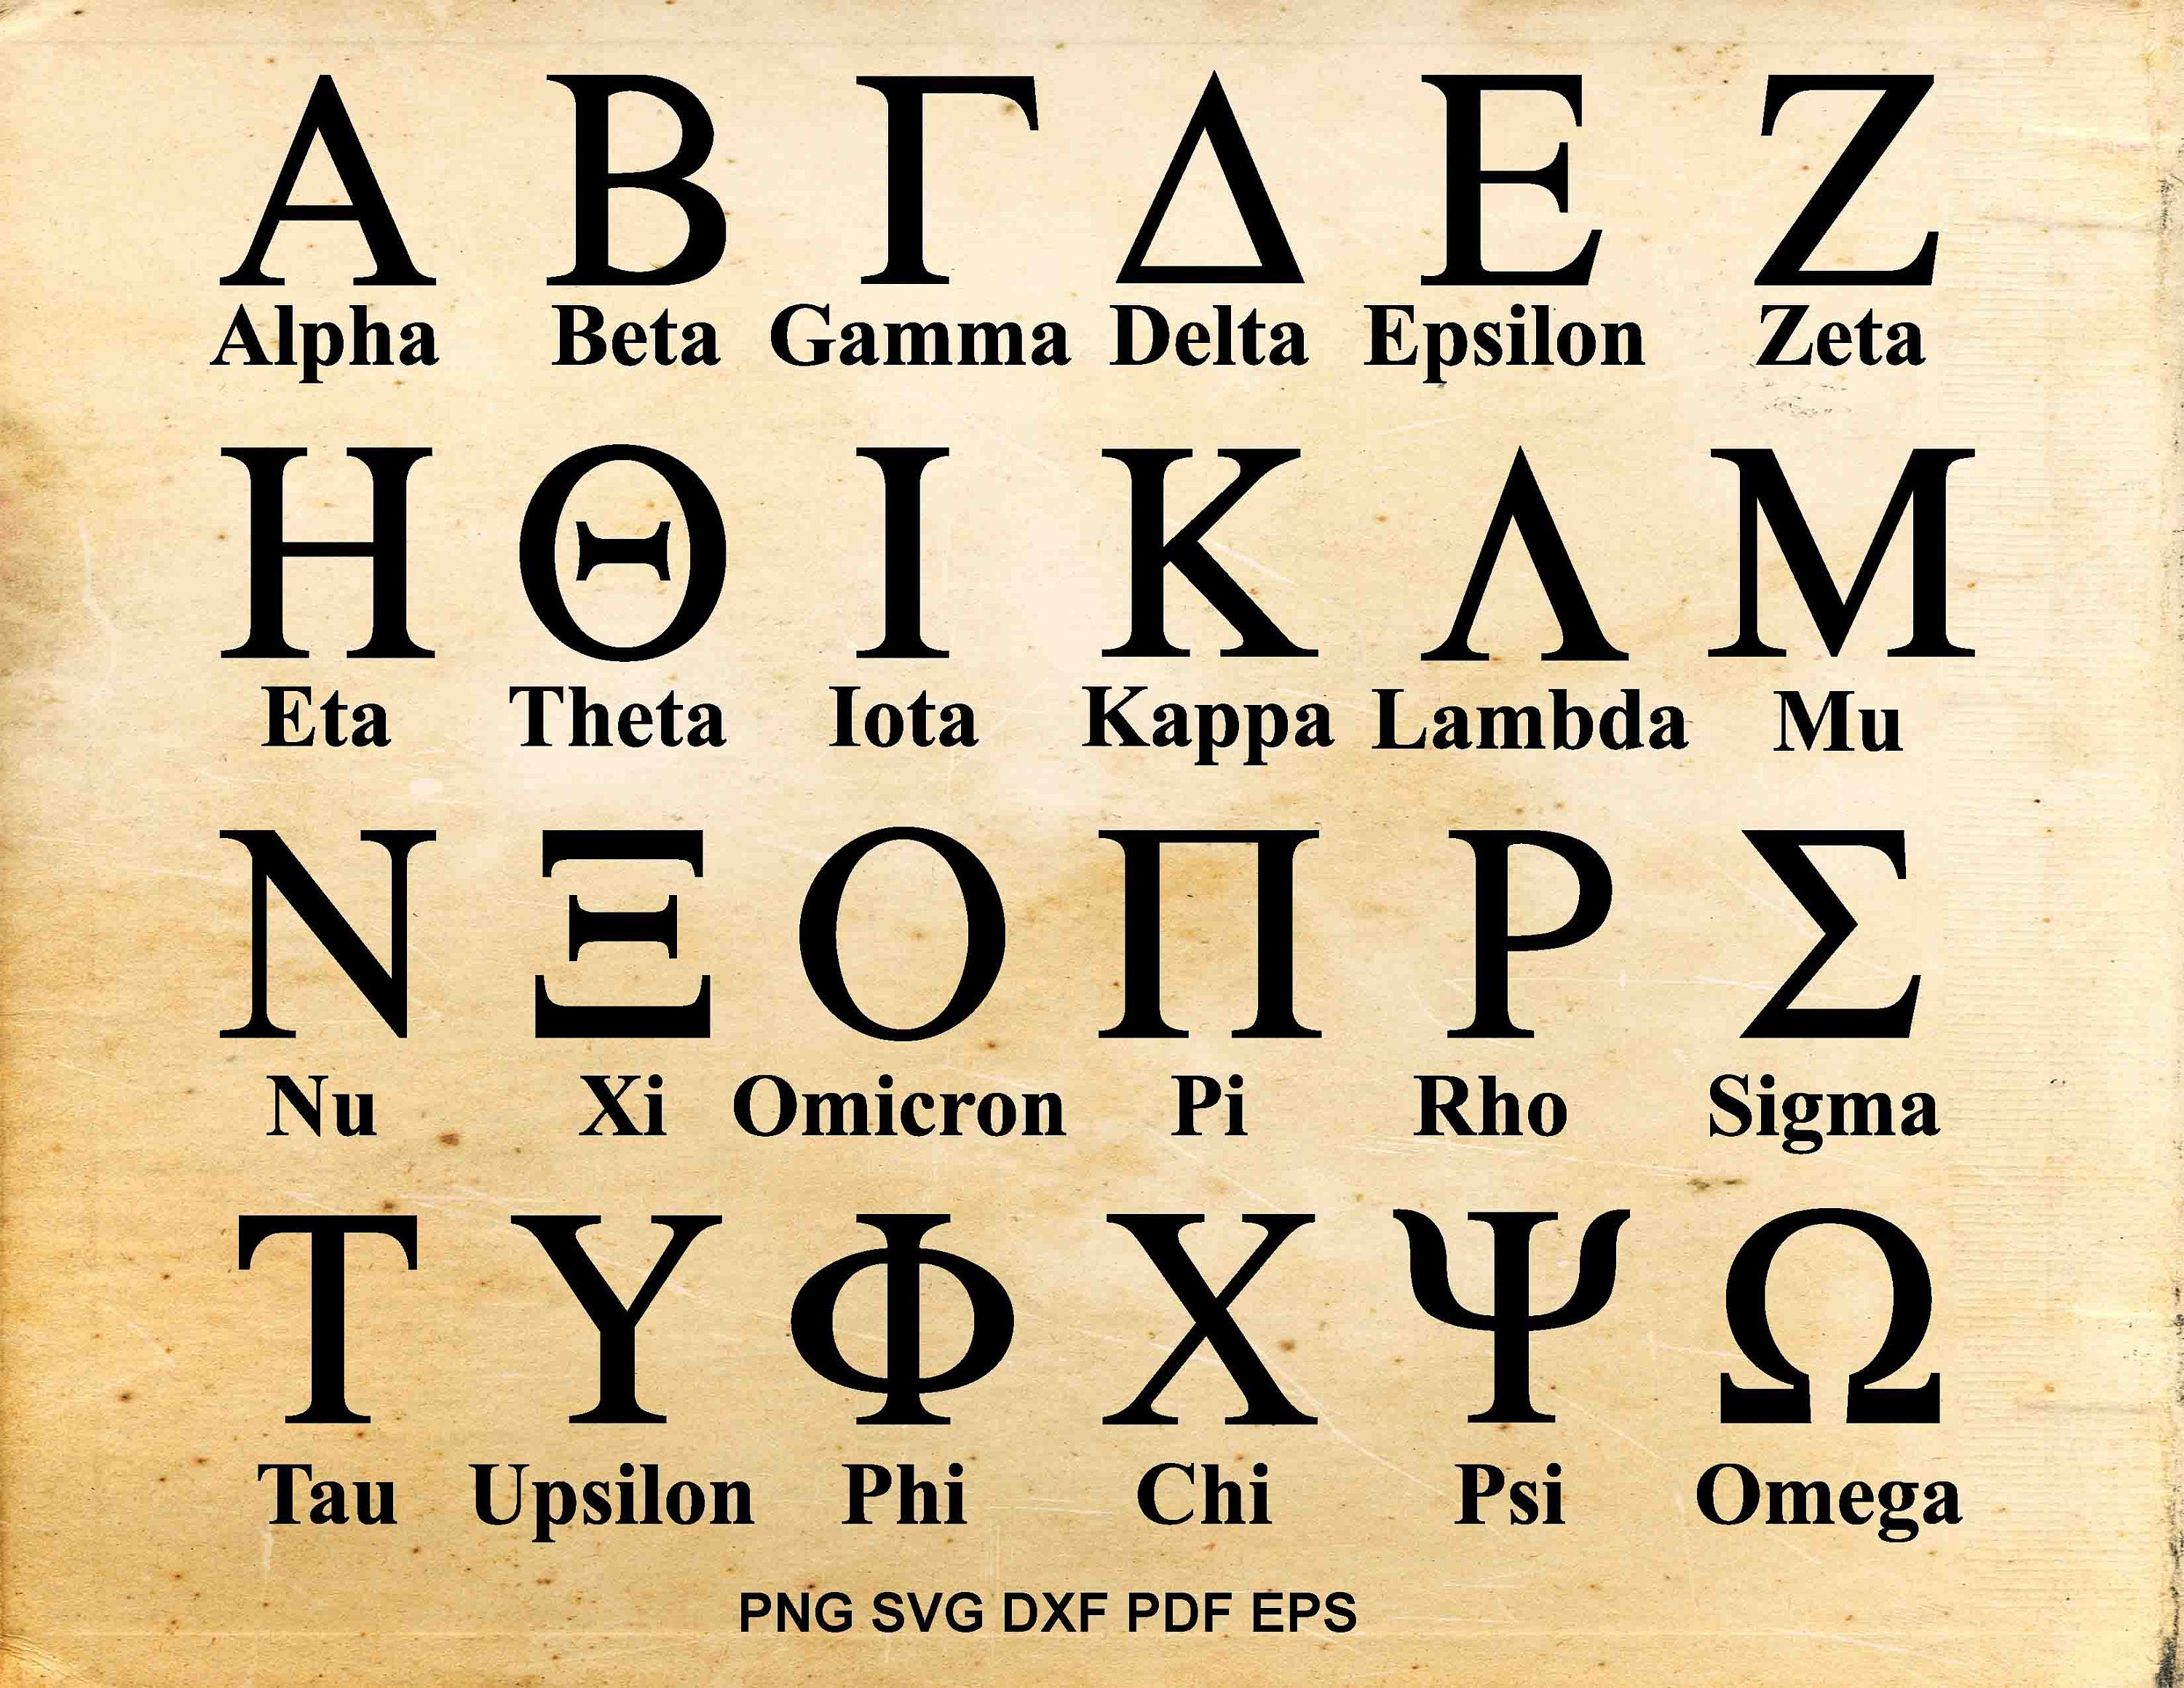 Альфа бета гамма дельта омега. Древний греческий алфавит. Альфа Омега алфавит древнегреческий. Греческий алфавит древнегреческий алфавит. Греческий алфавит Омикрон.